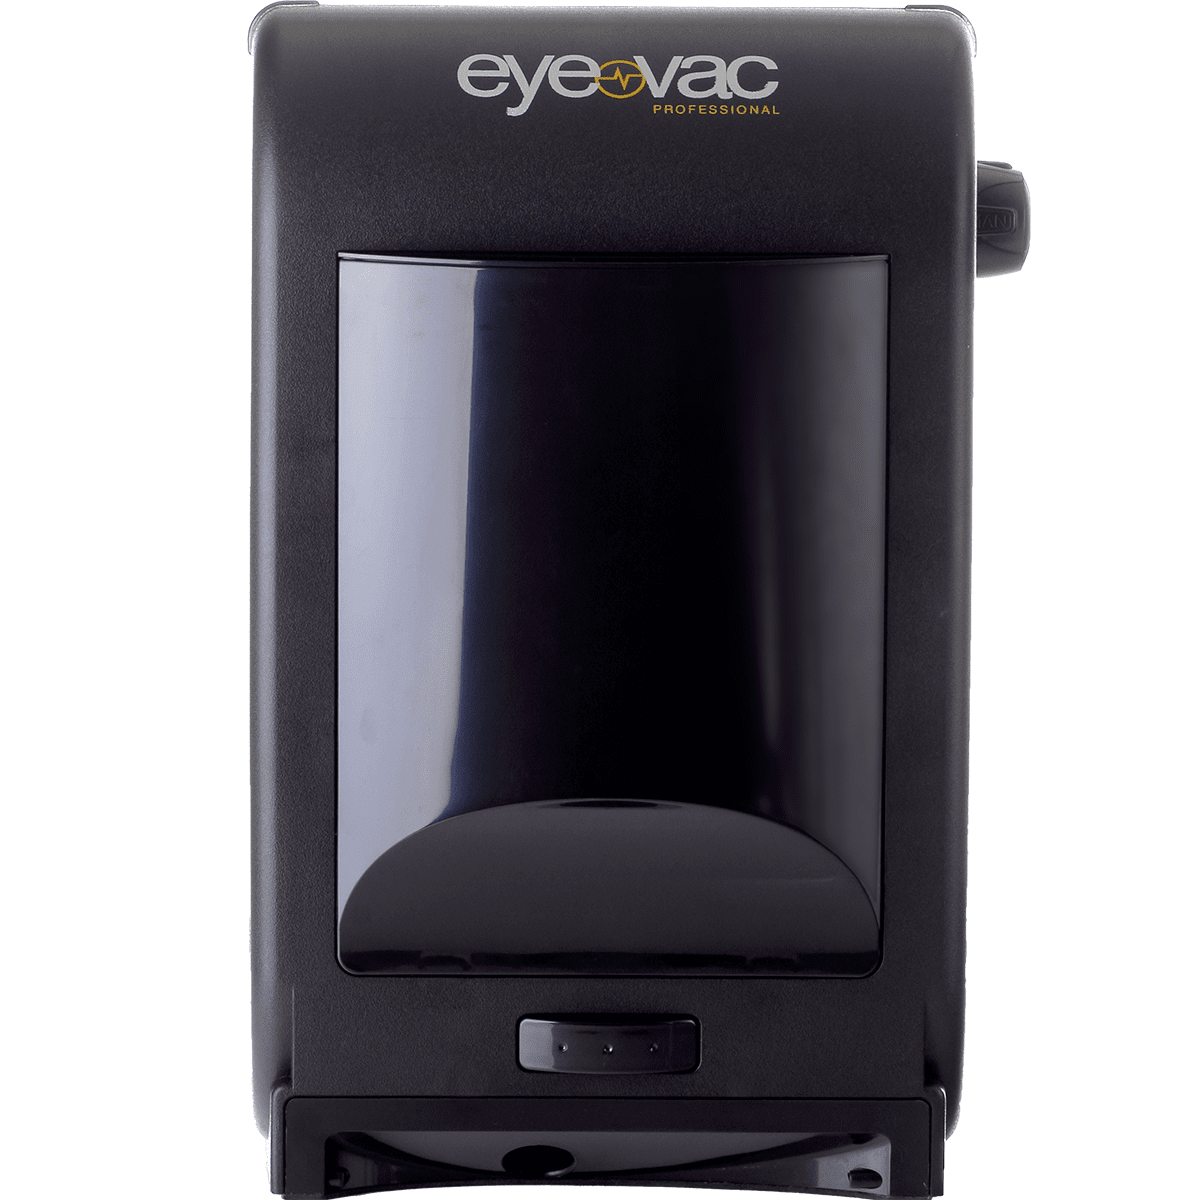 Eyevac Pro Touchless Vacuum - Tuxedo Black (evpro)